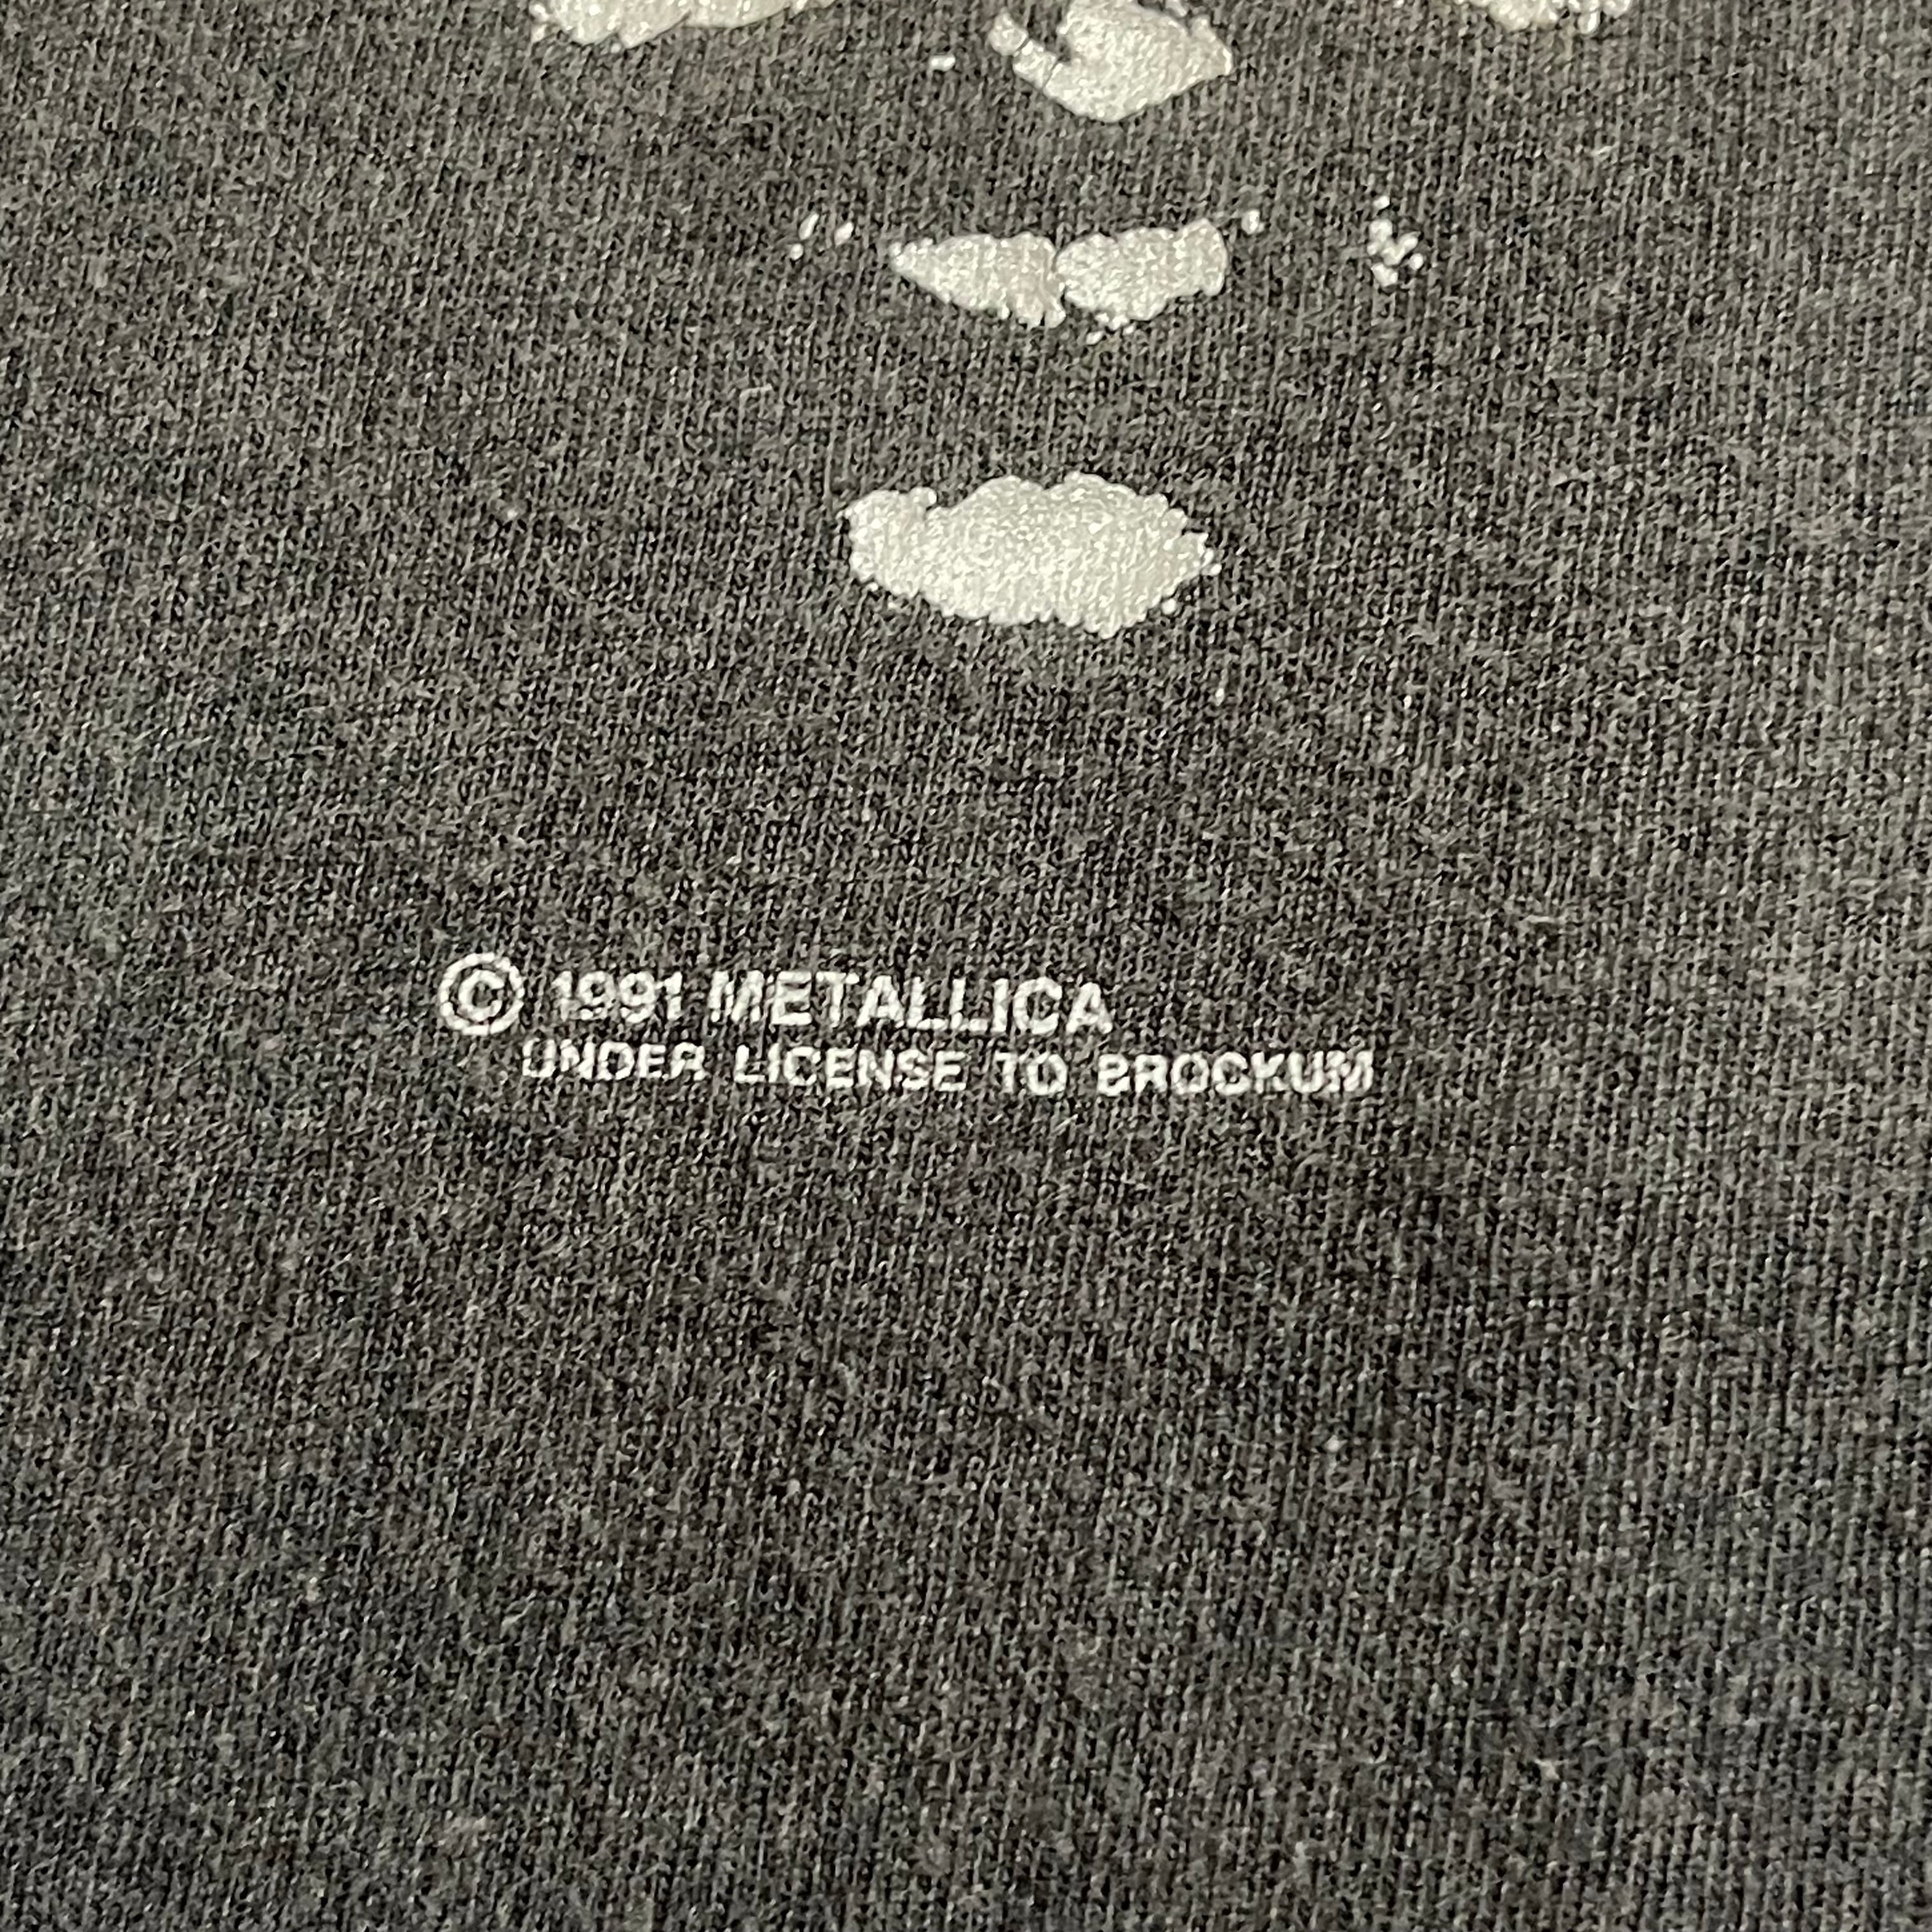 90年代 フルーツオブザルーム FRUIT OF THE LOOM METALLICA メタリカ LOAD TOUR 1996-1997 両面プリント バンドTシャツ バンT カナダ製 メンズL ヴィンテージ /evb001830